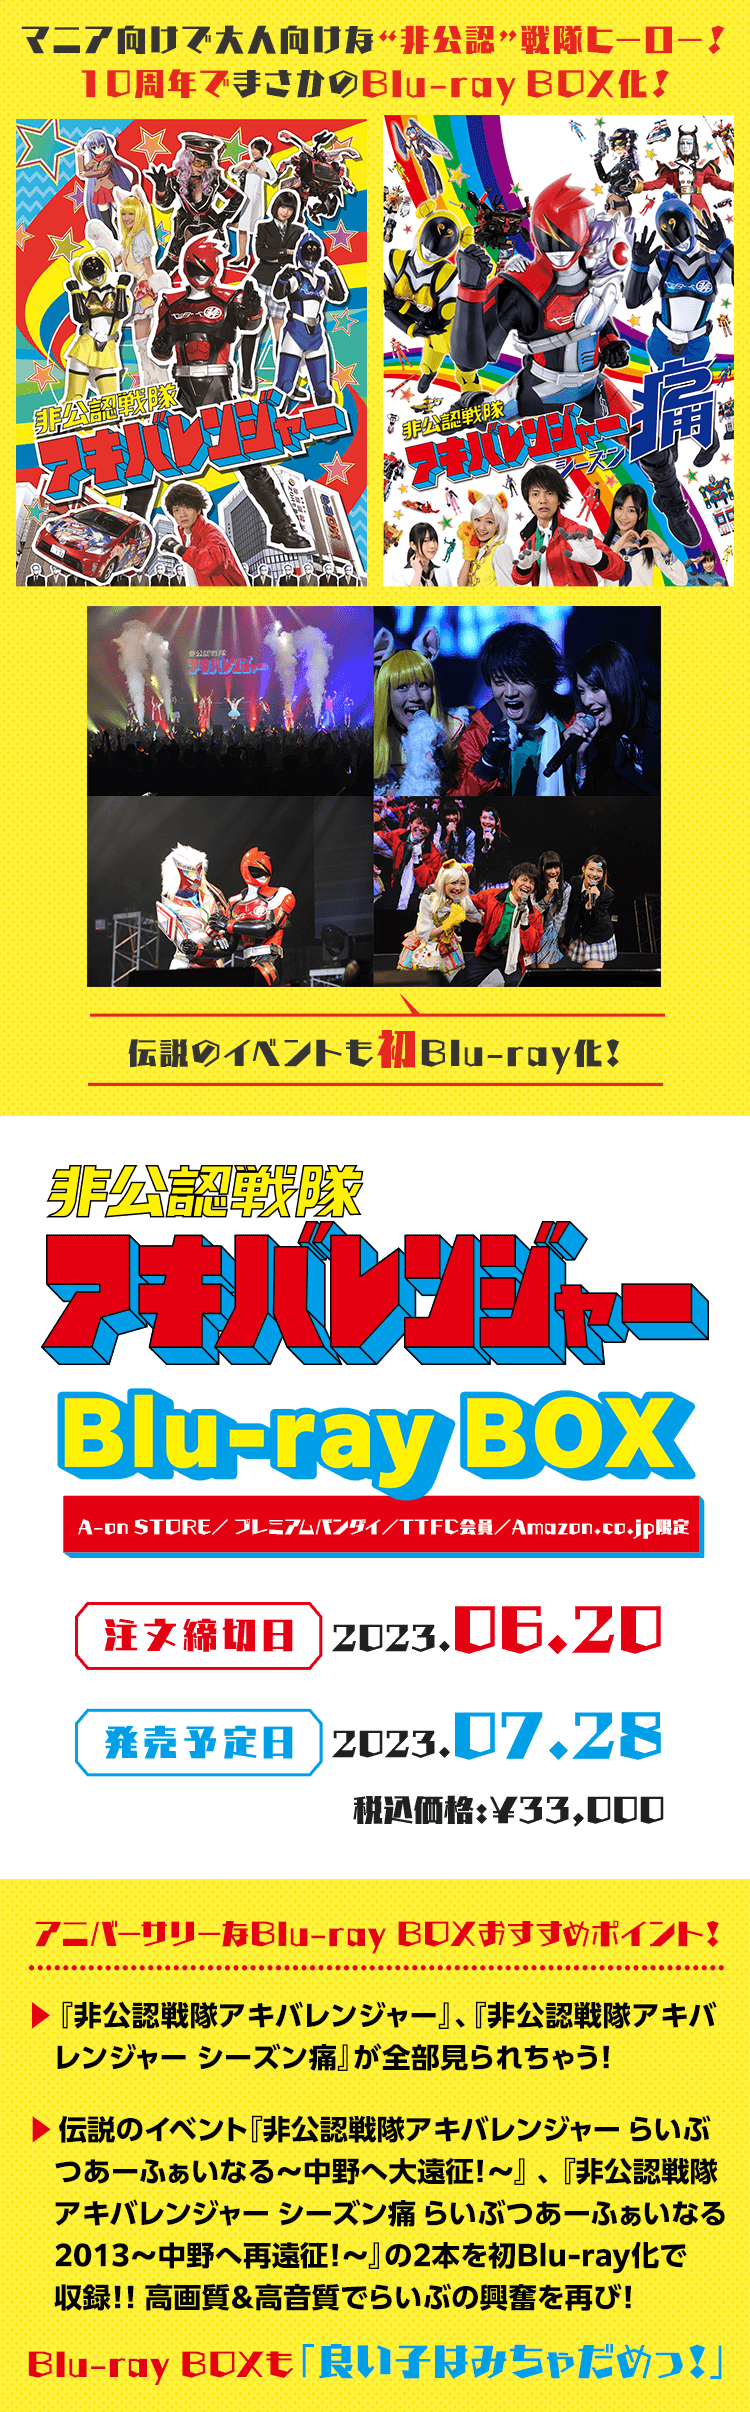 非公認戦隊アキバレンジャー Blu-ray BOX